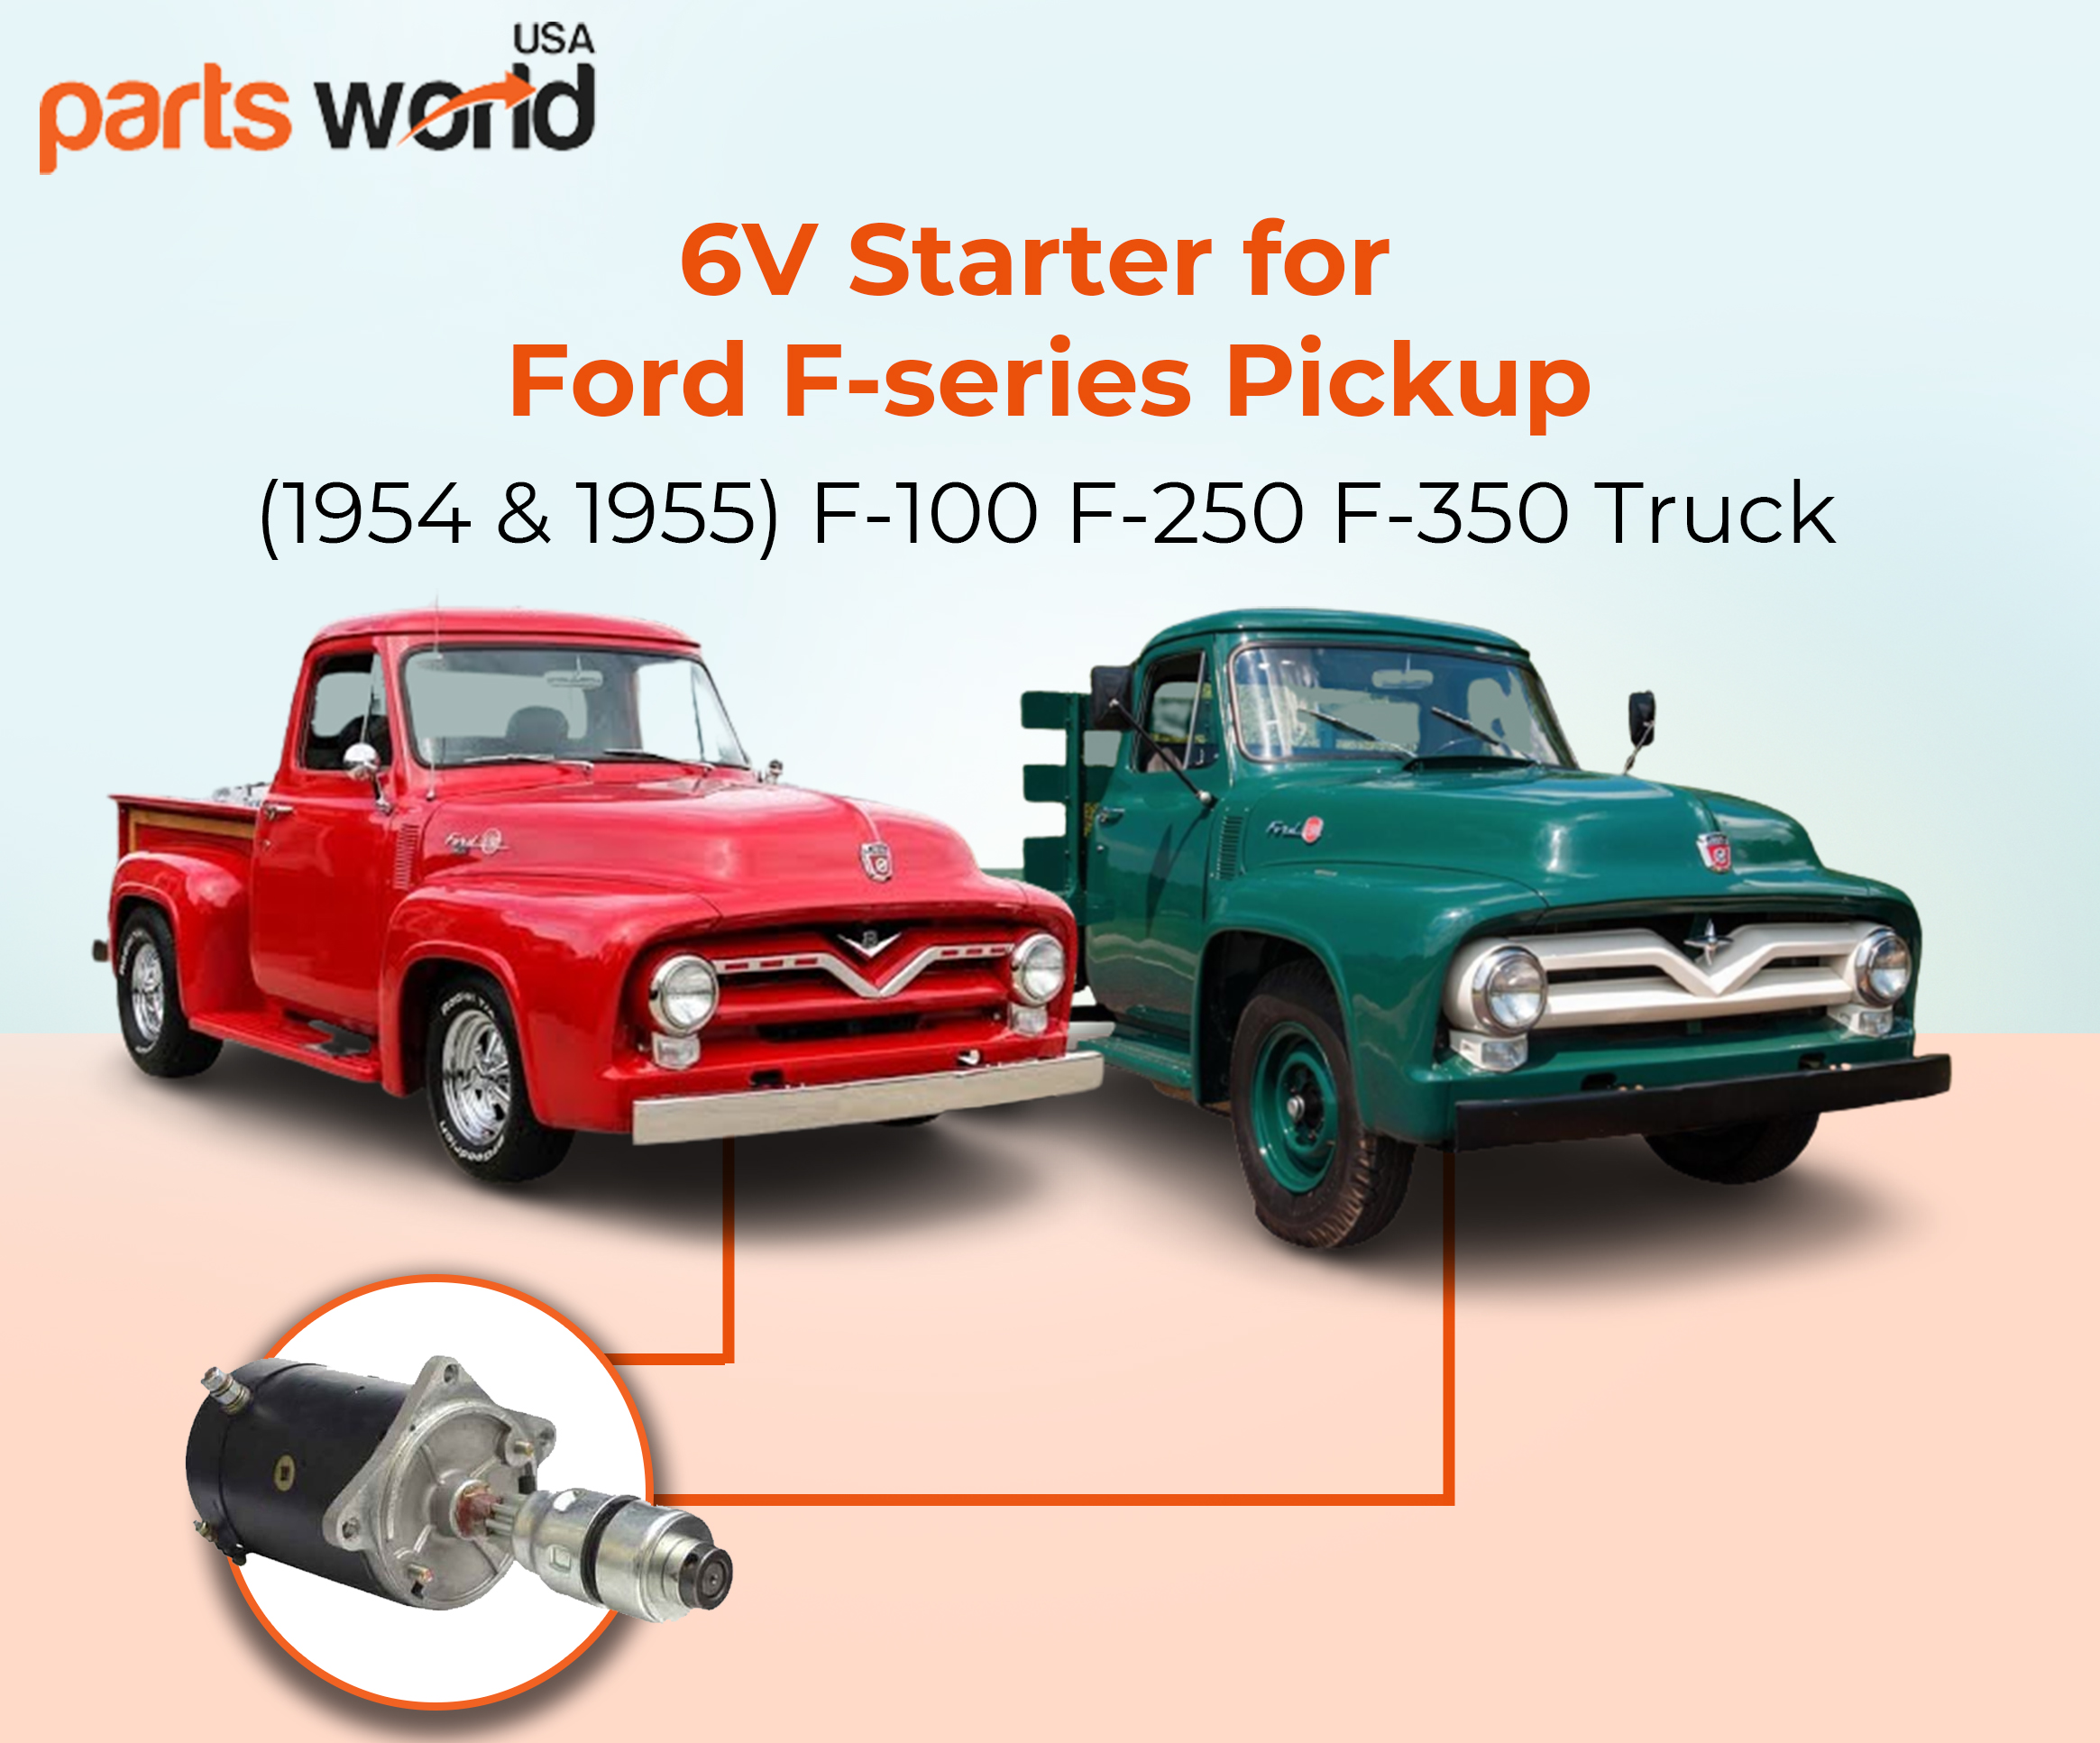 Starter for Ford Car & Truck Older Mobiles 1940-1950 7HA-11002; 410-14060 